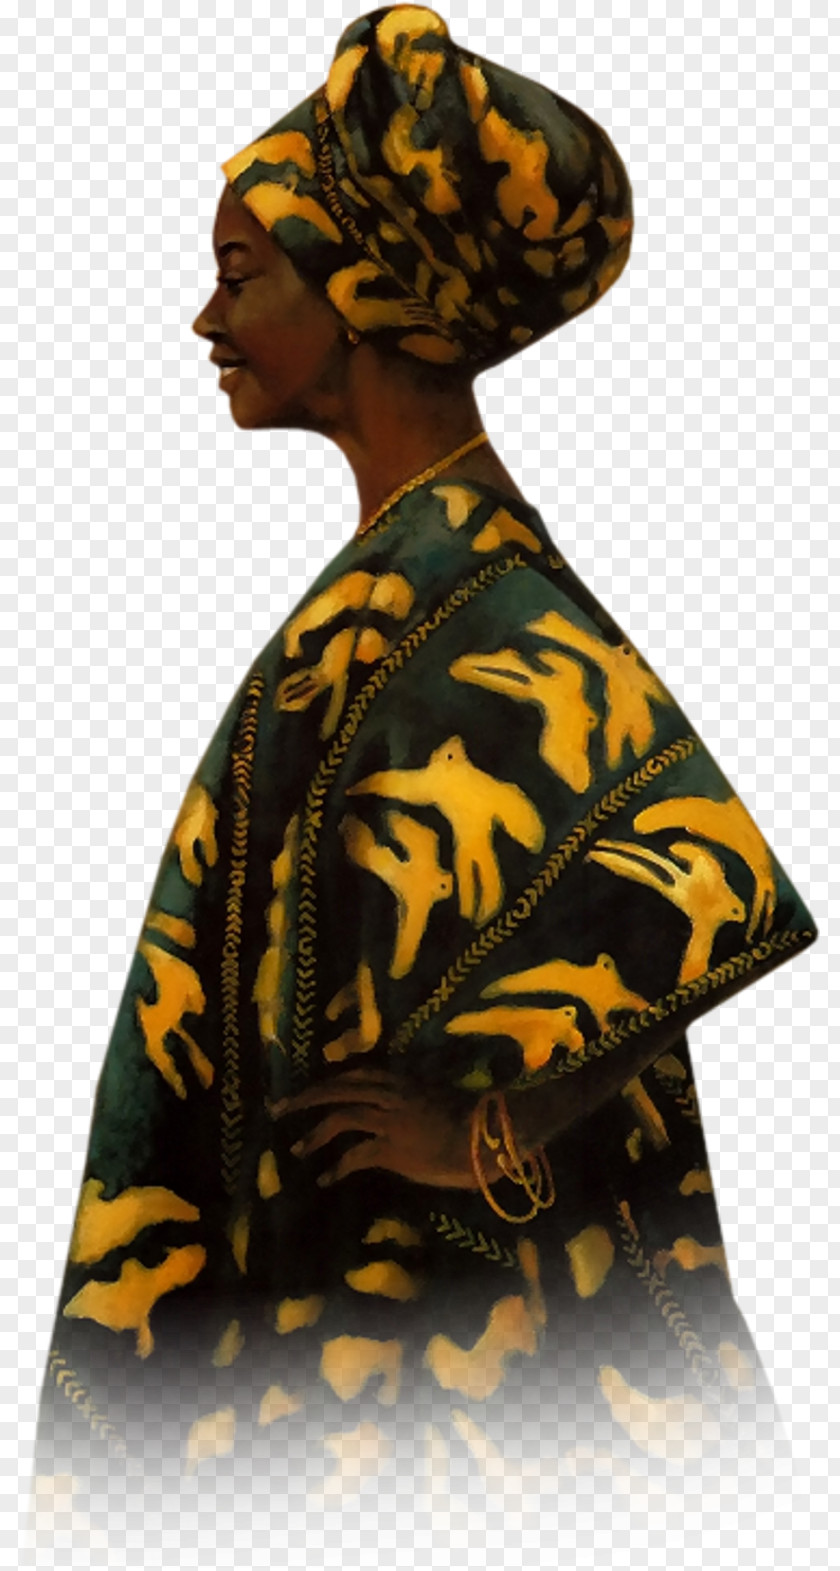 African Woman PaintShop Pro Microsoft Paint Tutorial PNG